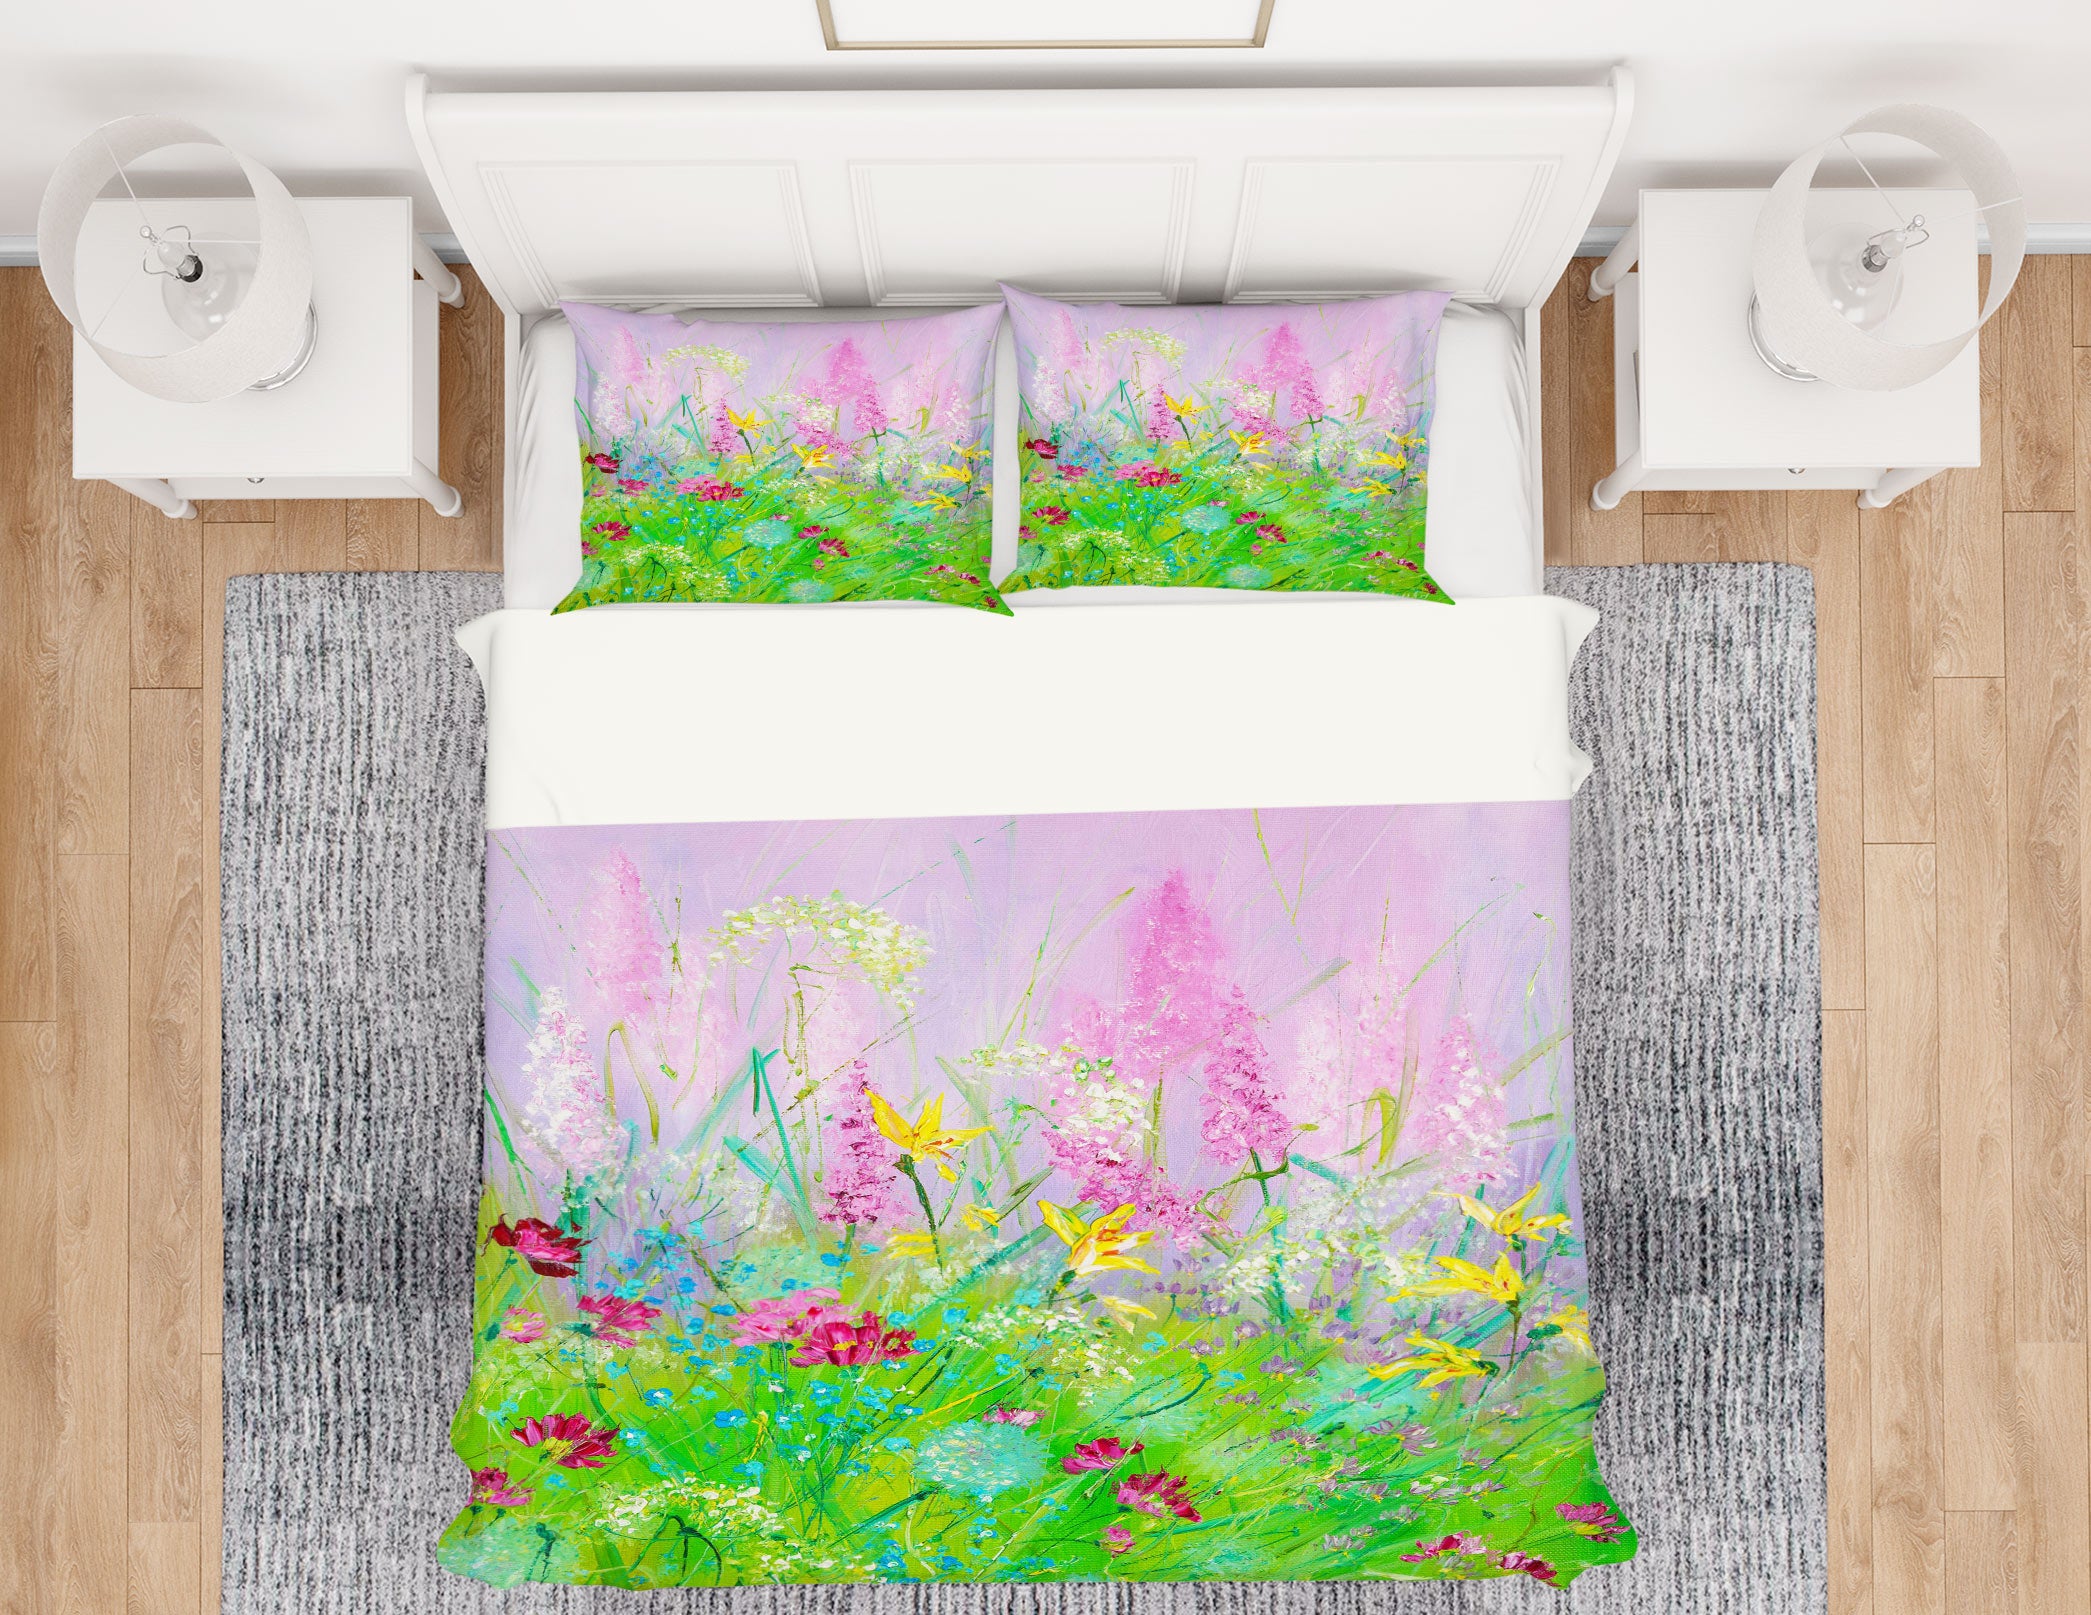 3D Green Grass Flower 496 Skromova Marina Bedding Bed Pillowcases Quilt